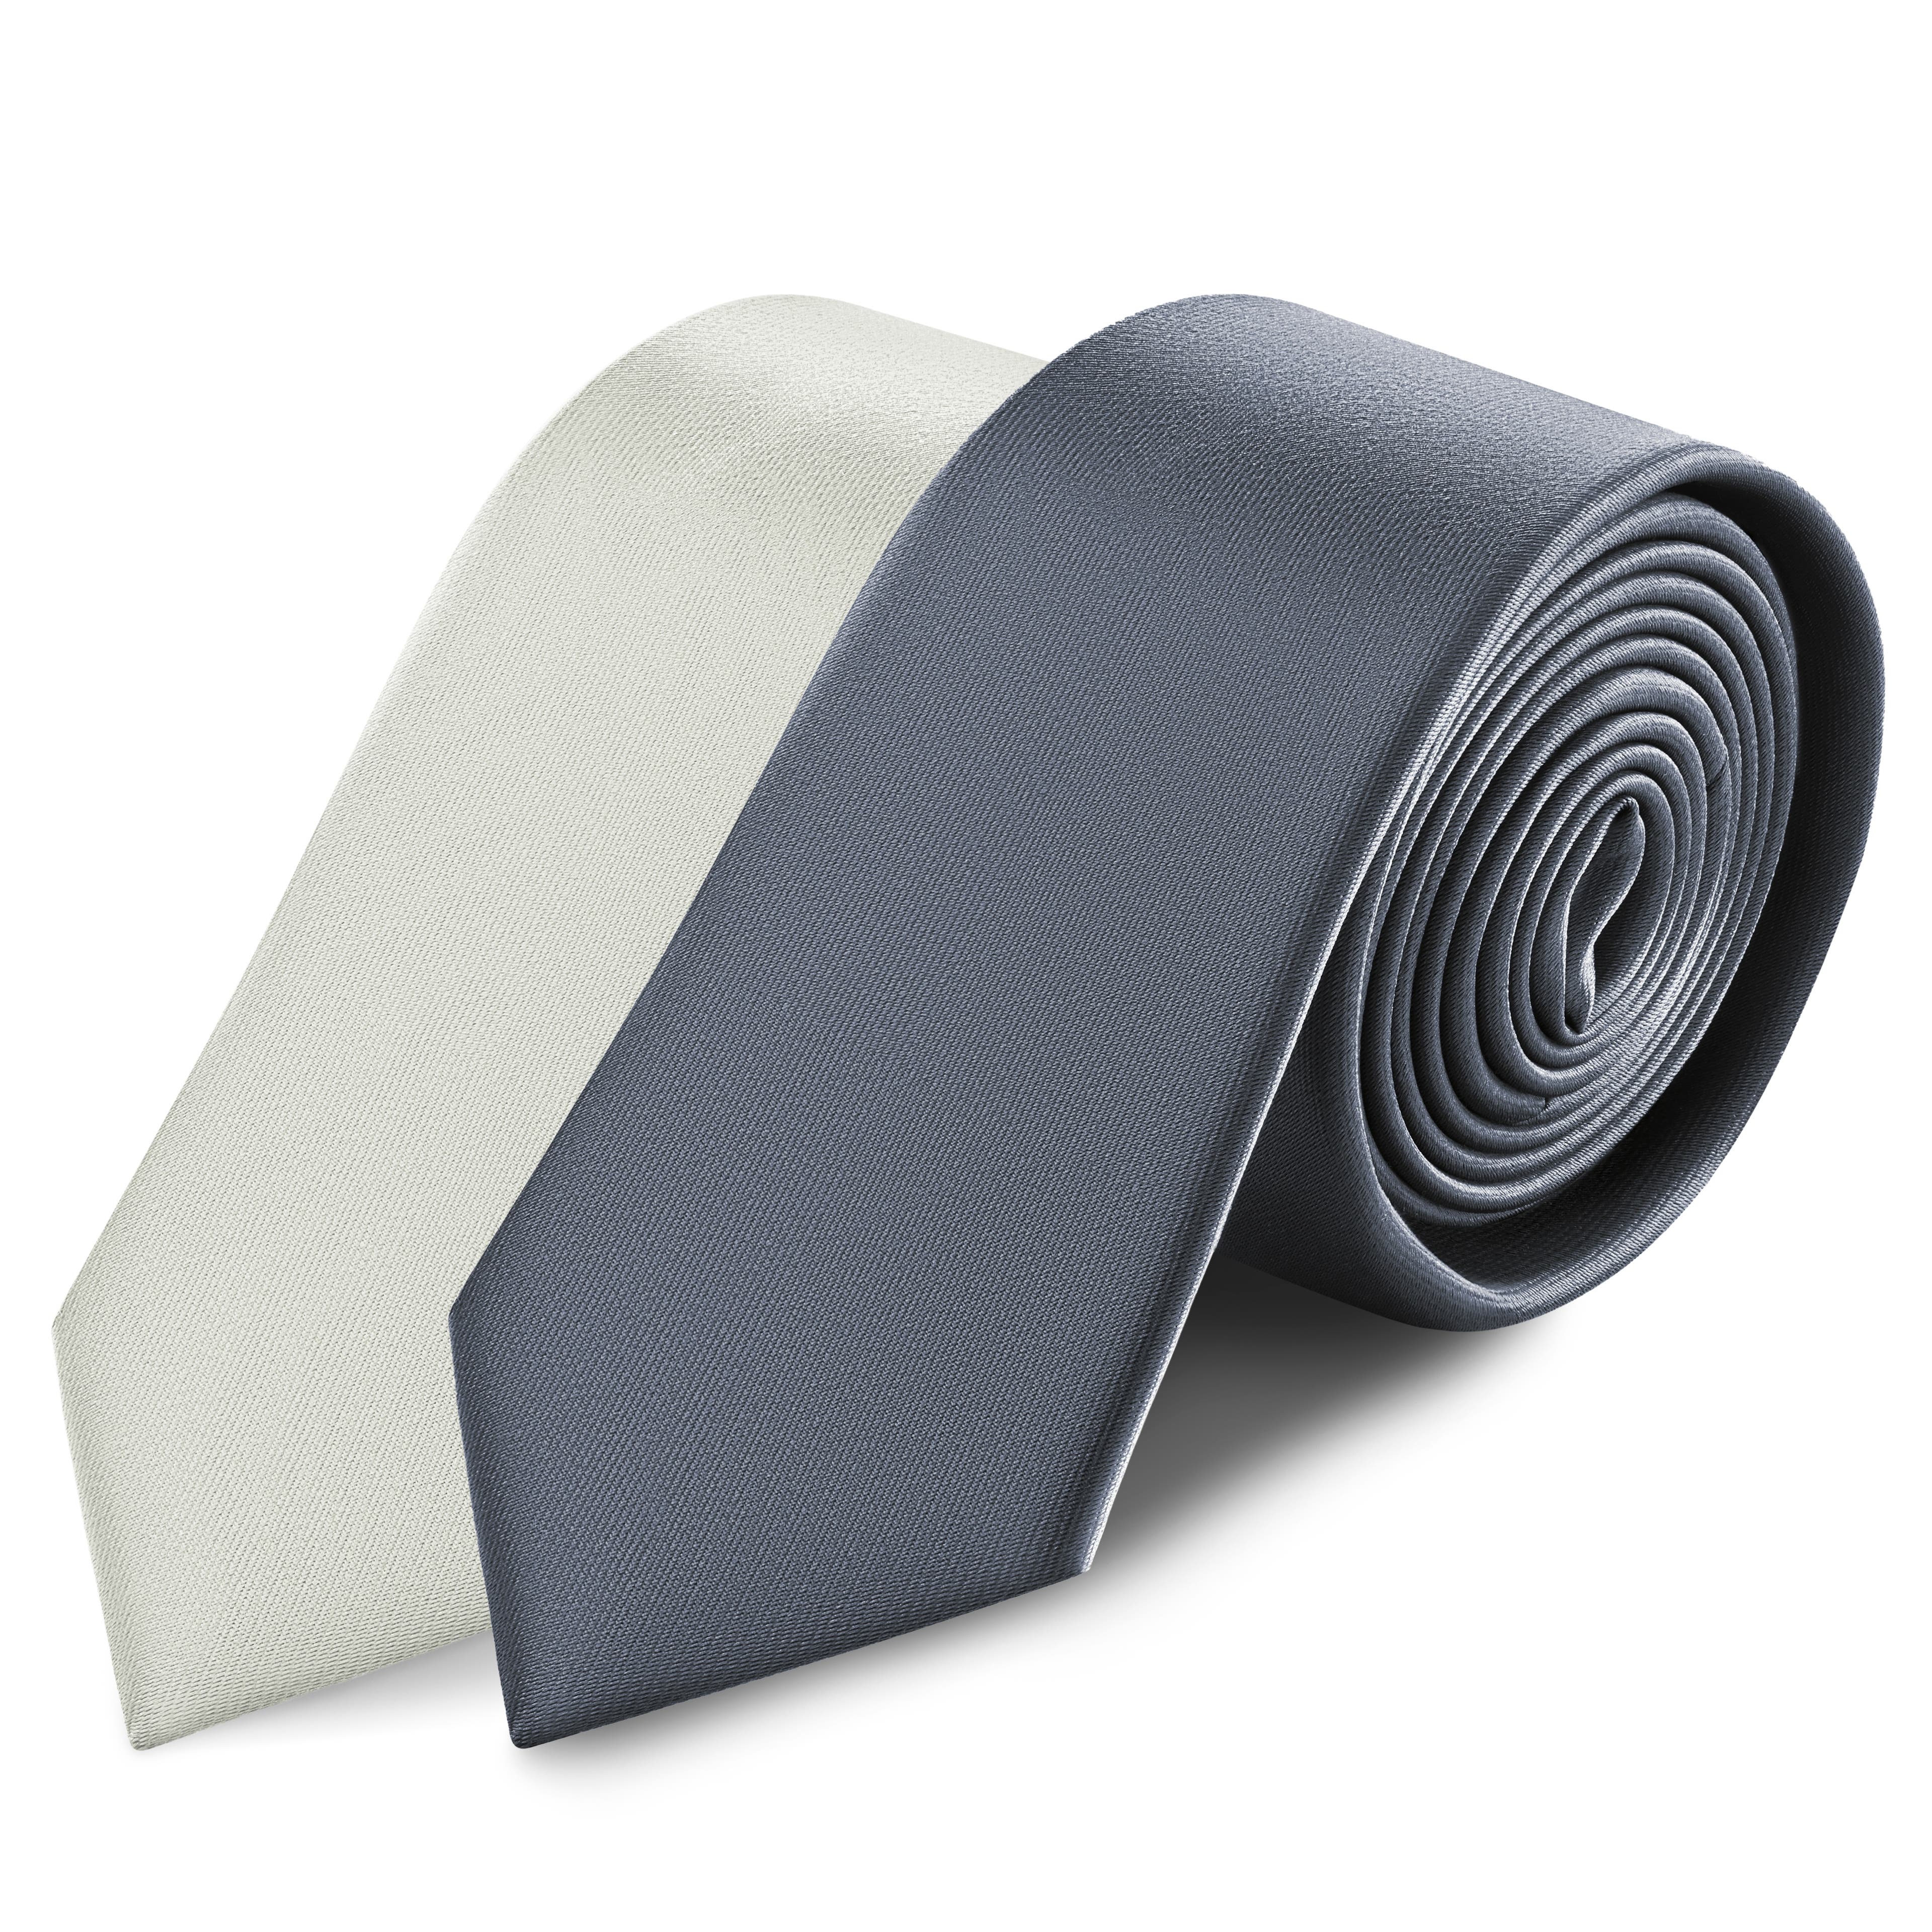 2 darabos | Világosszürke és grafitszürke nyakkendők